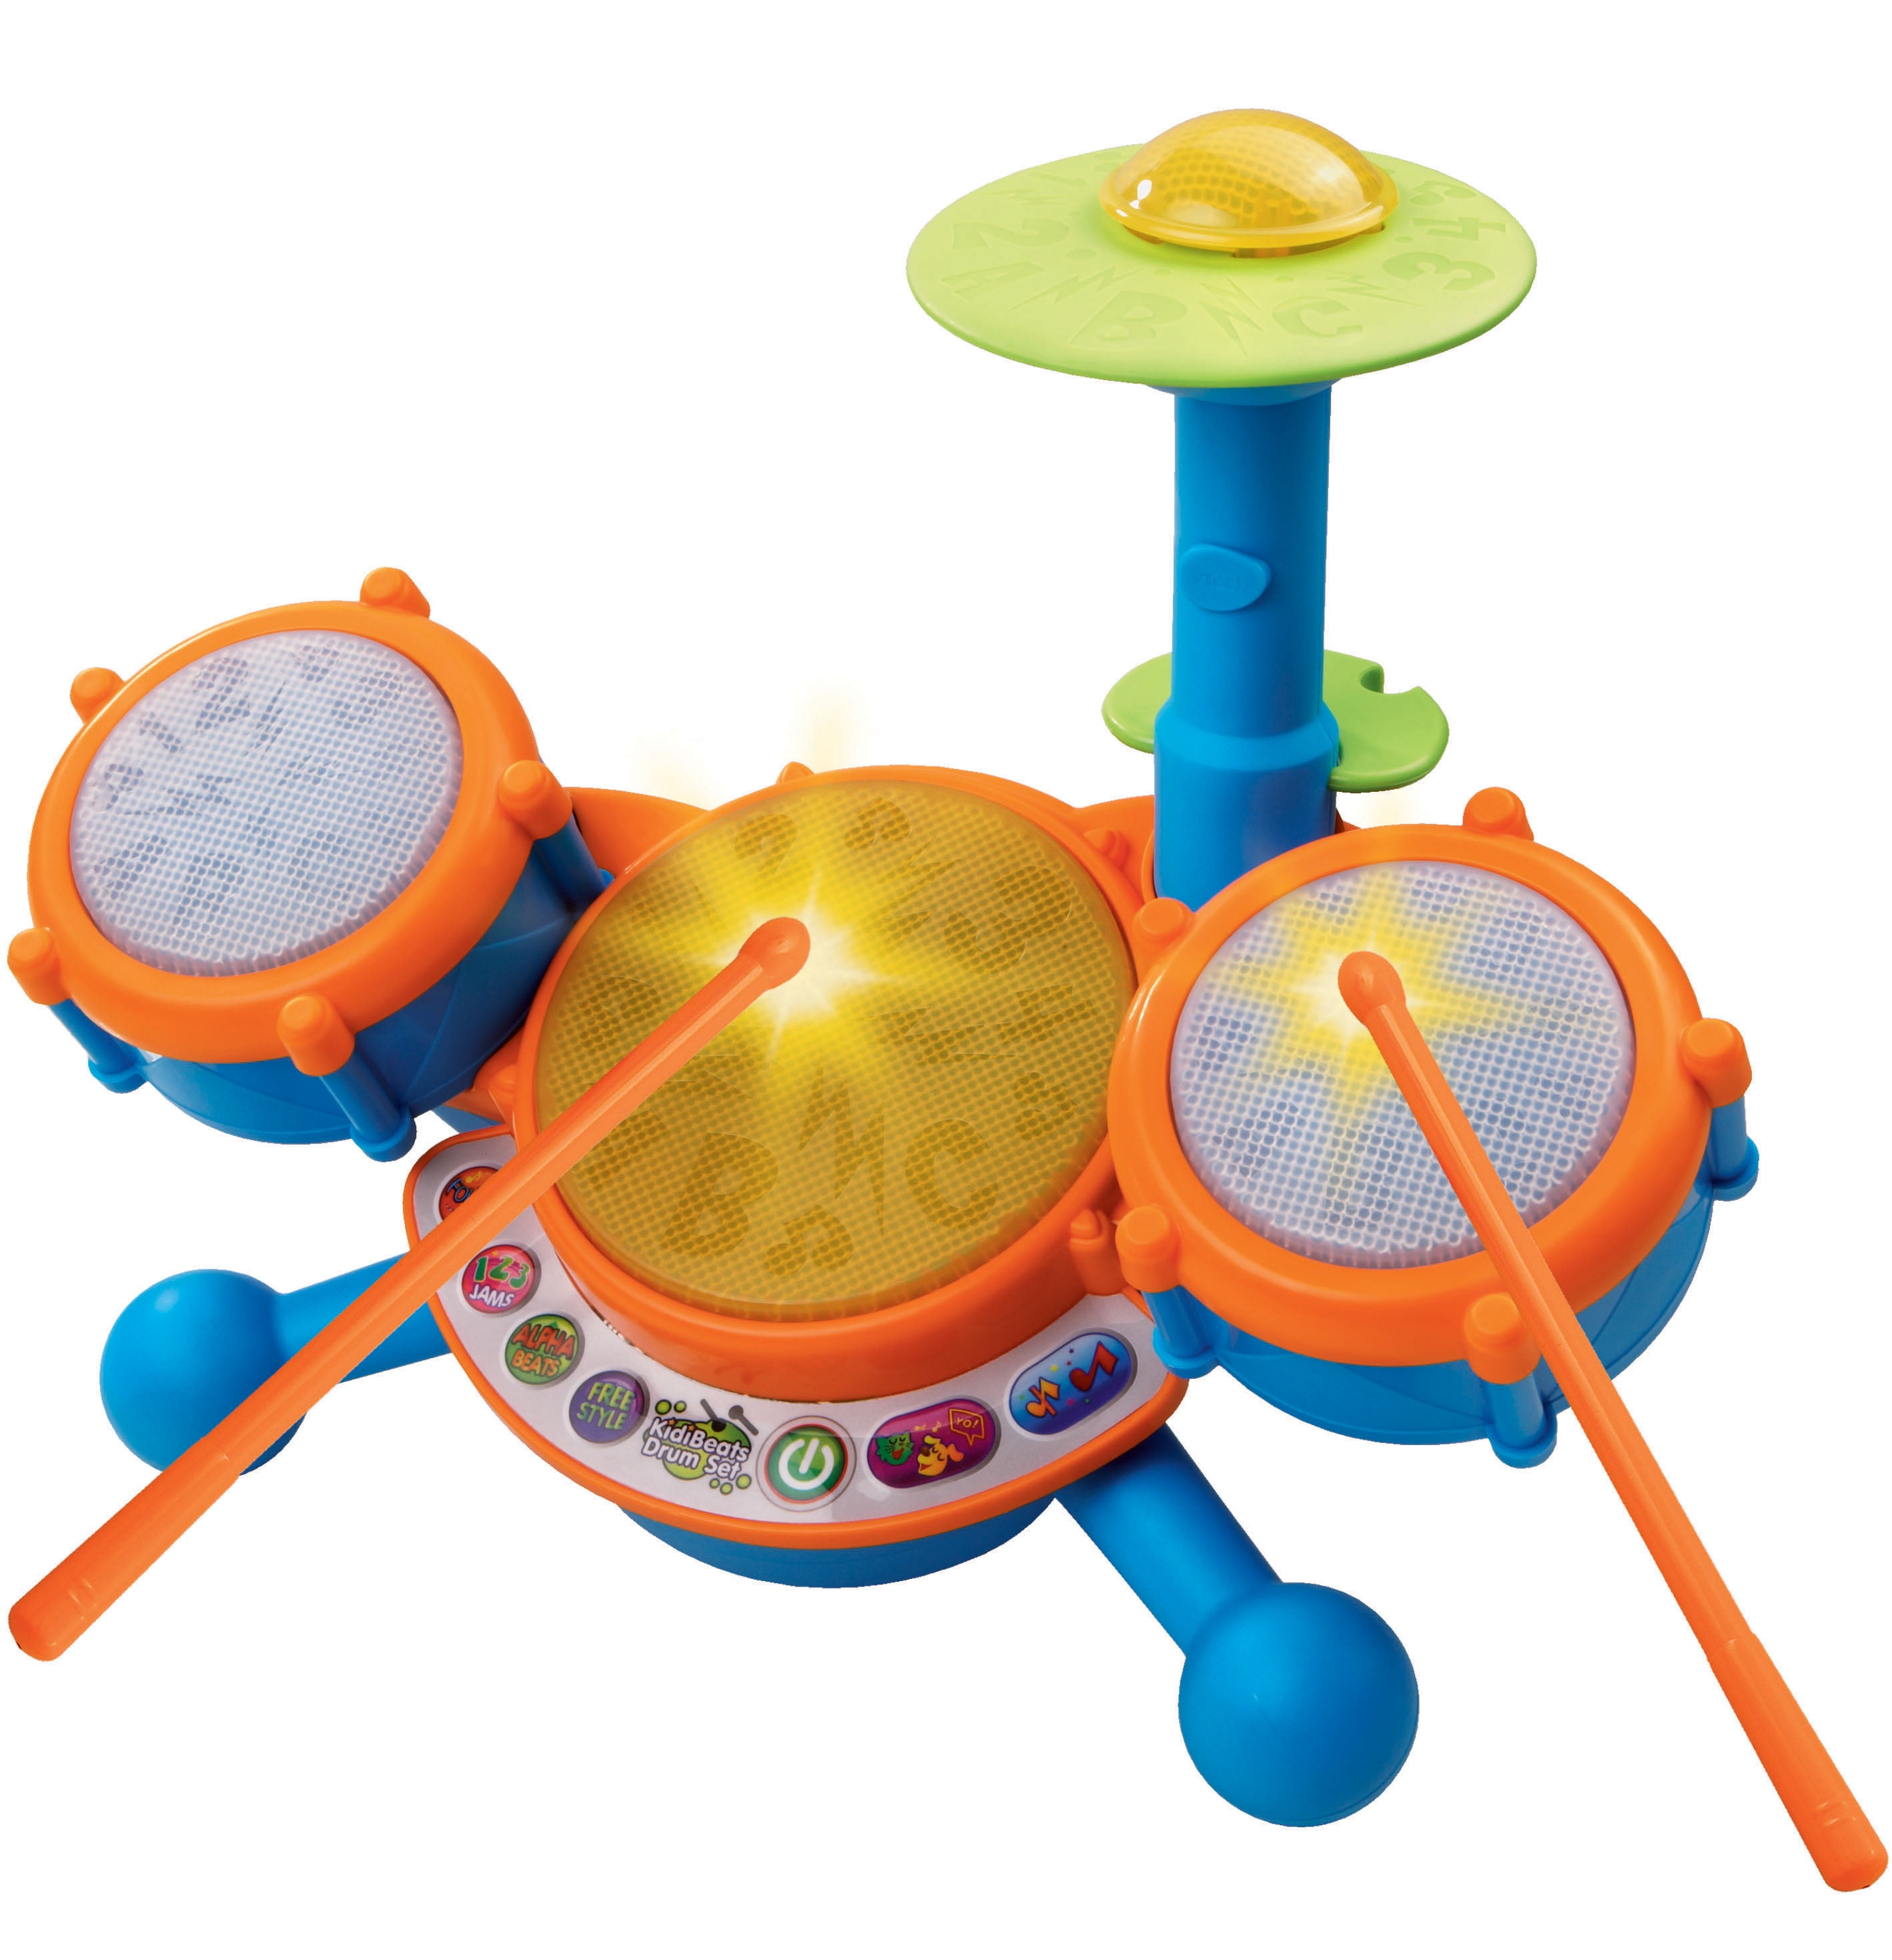 villeur Kids Drum Set Musical Instrument Toy Children Interactive Toys Musical Instruments 